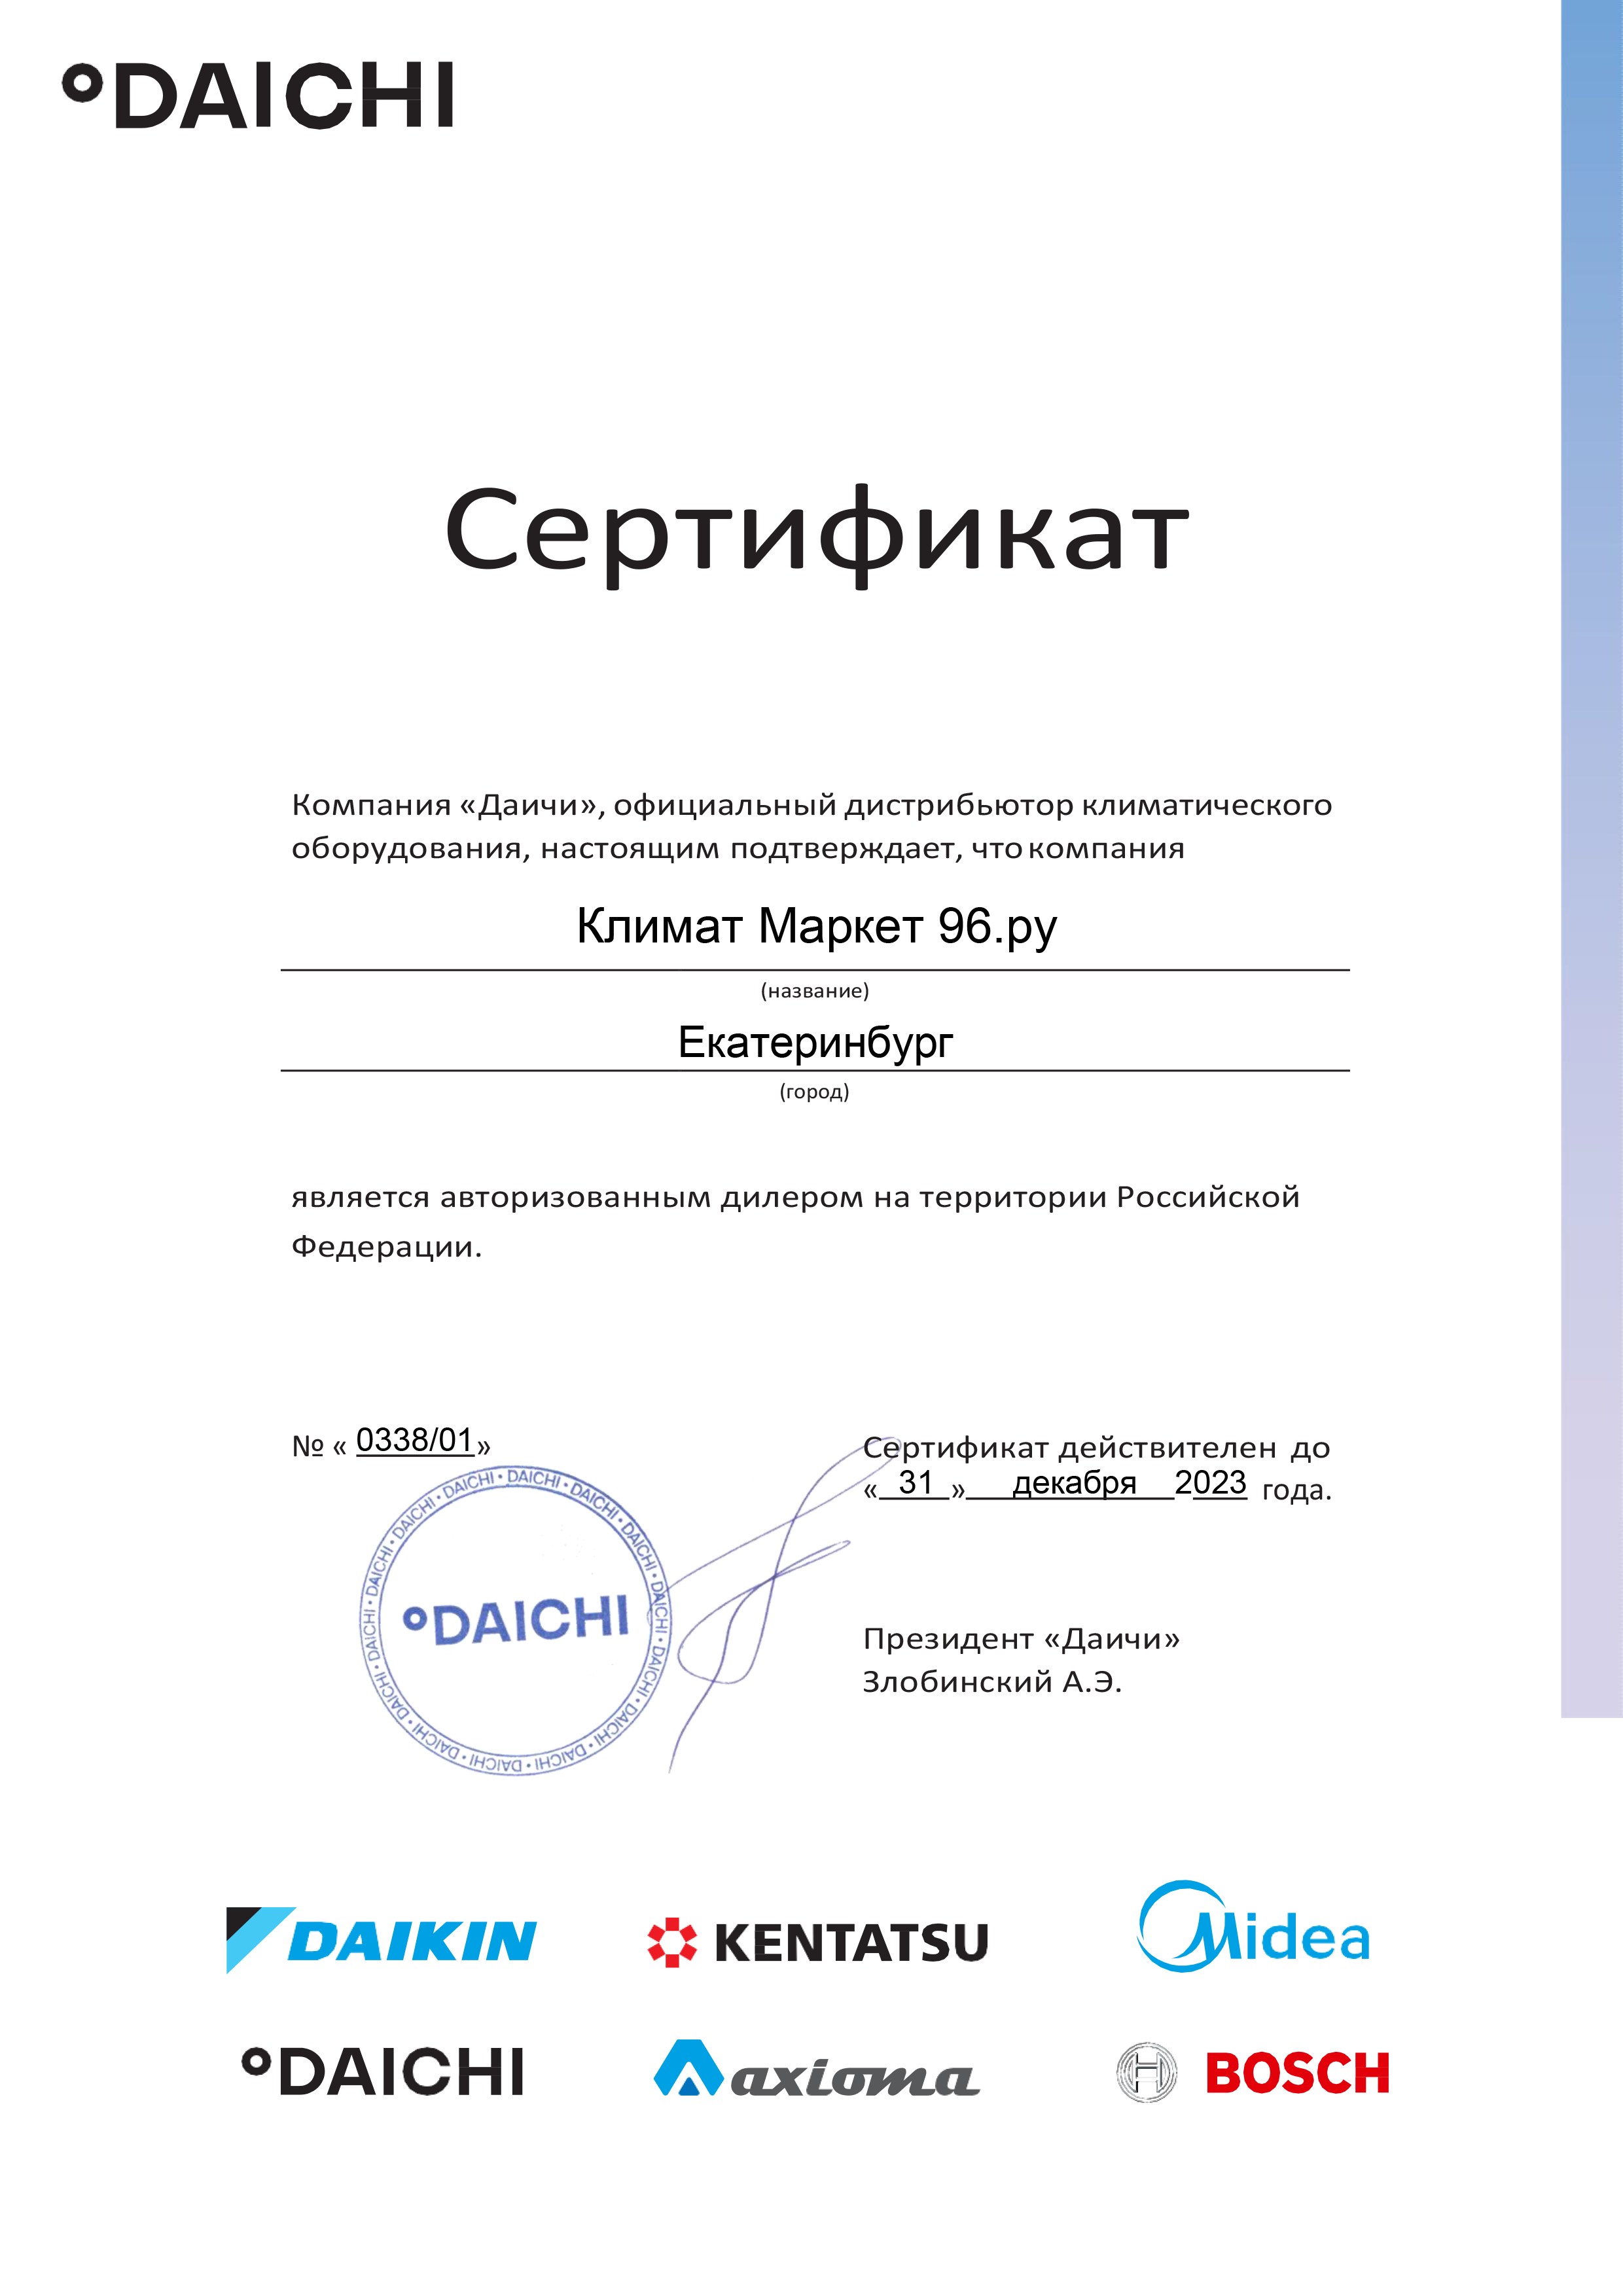 daichi-km96 Vnytrennii blok Kentatsu KMGBB25HZAN1 kypit v Krasnoyarske v internet-magazine KlimatMarket96.ry Сертификат дилера